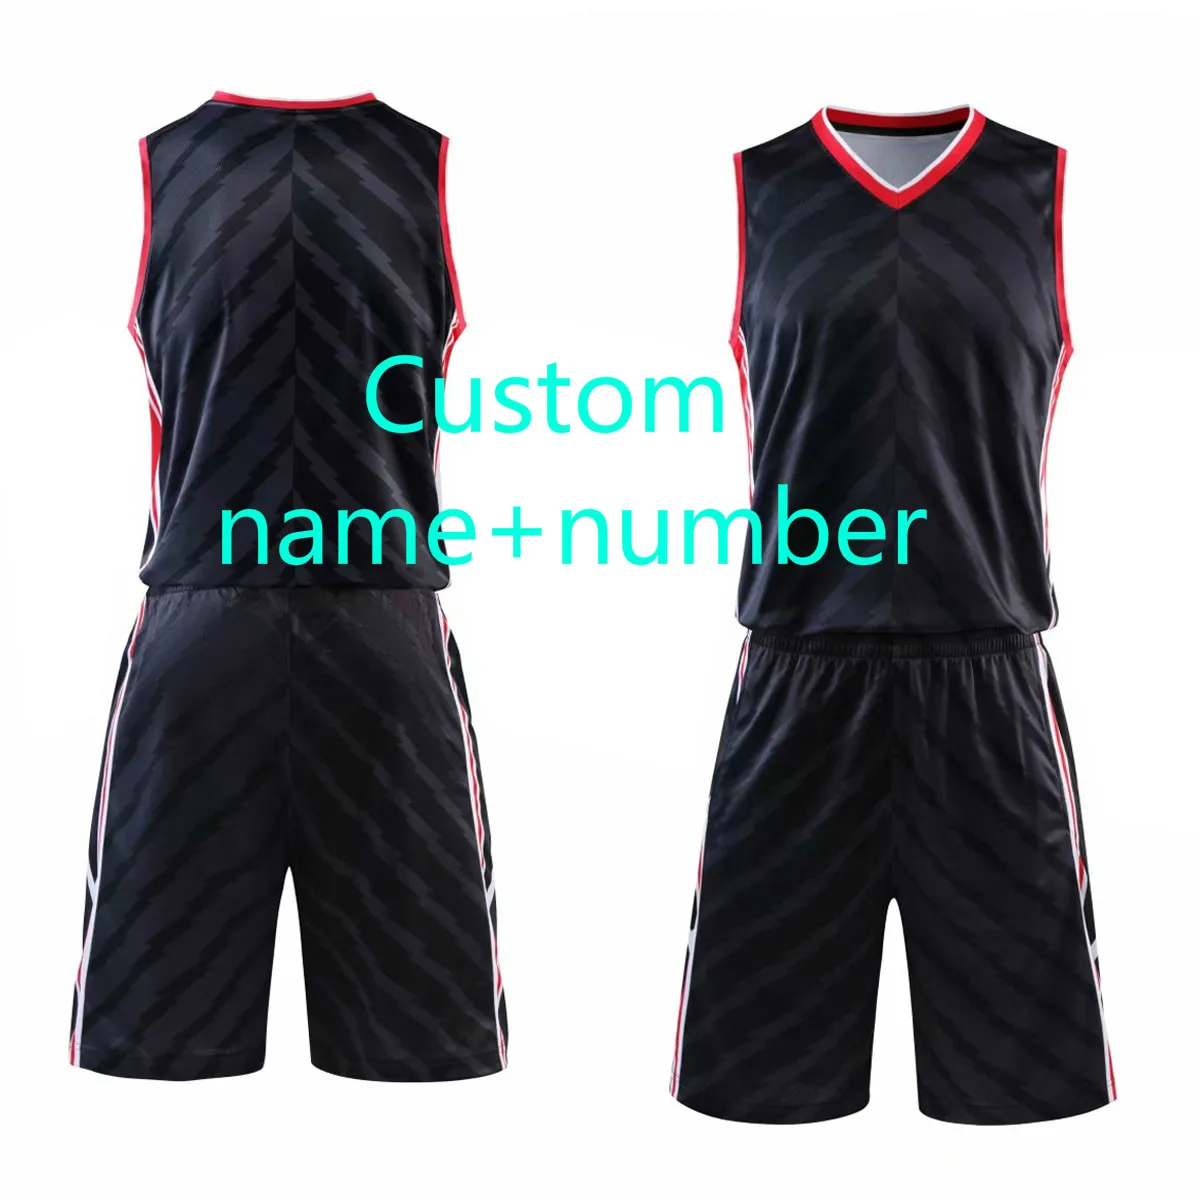 Быстросохнущие мужские баскетбольные майки, Молодежная форма для баскетбола, на заказ, спортивная одежда, костюм, майки, шорты, плюс размер - Цвет: Custom name number